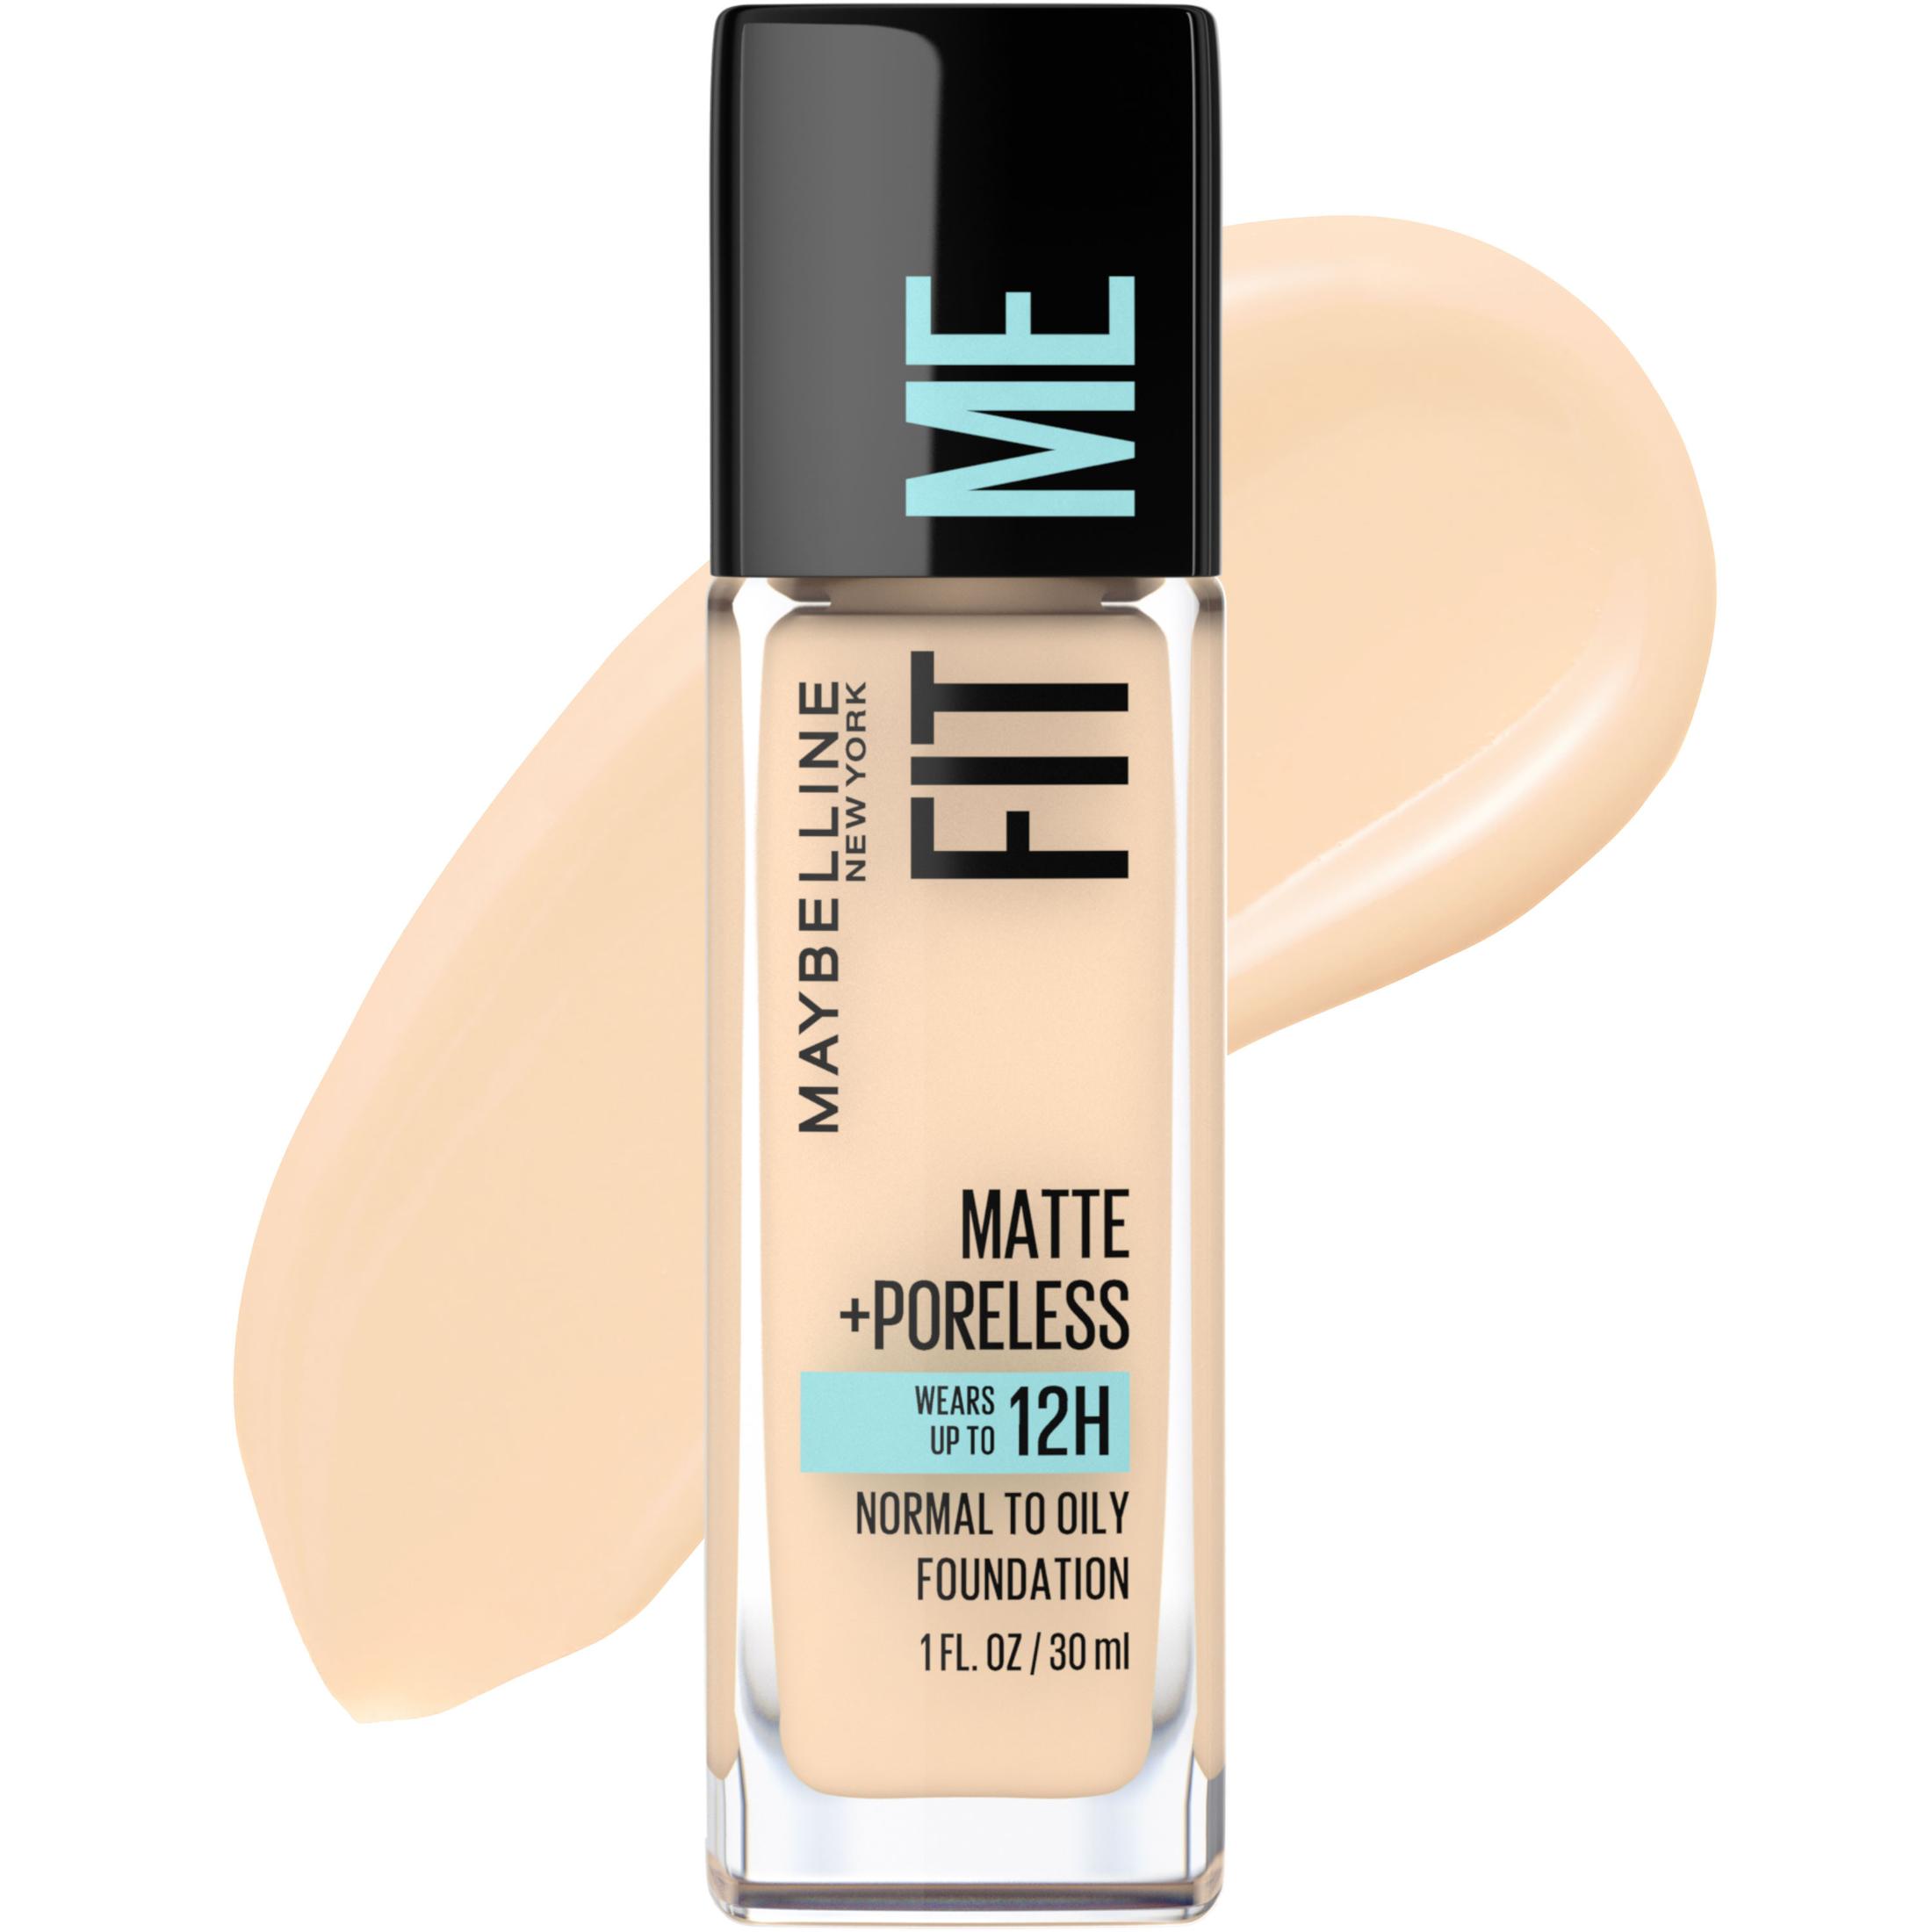 Maybelline Fit Me Matte + Poreless Liquid Foundation Makeup, Light Beige, 1 fl oz - image 1 of 9